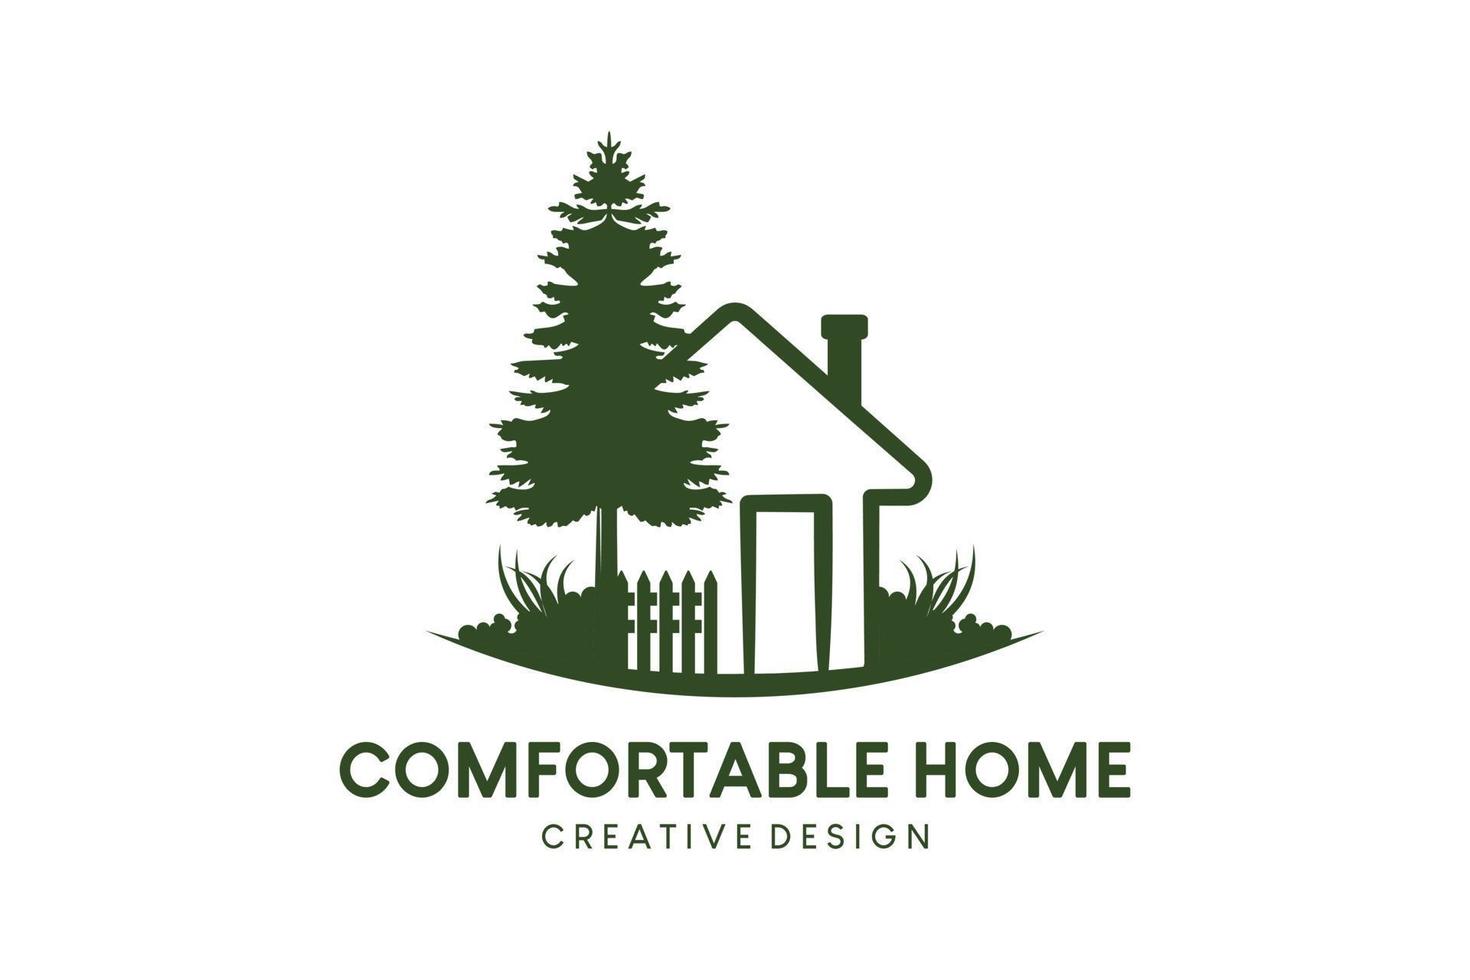 diseño del logotipo del icono de la casa, casa verde dibujada a mano con árboles y hierba vector